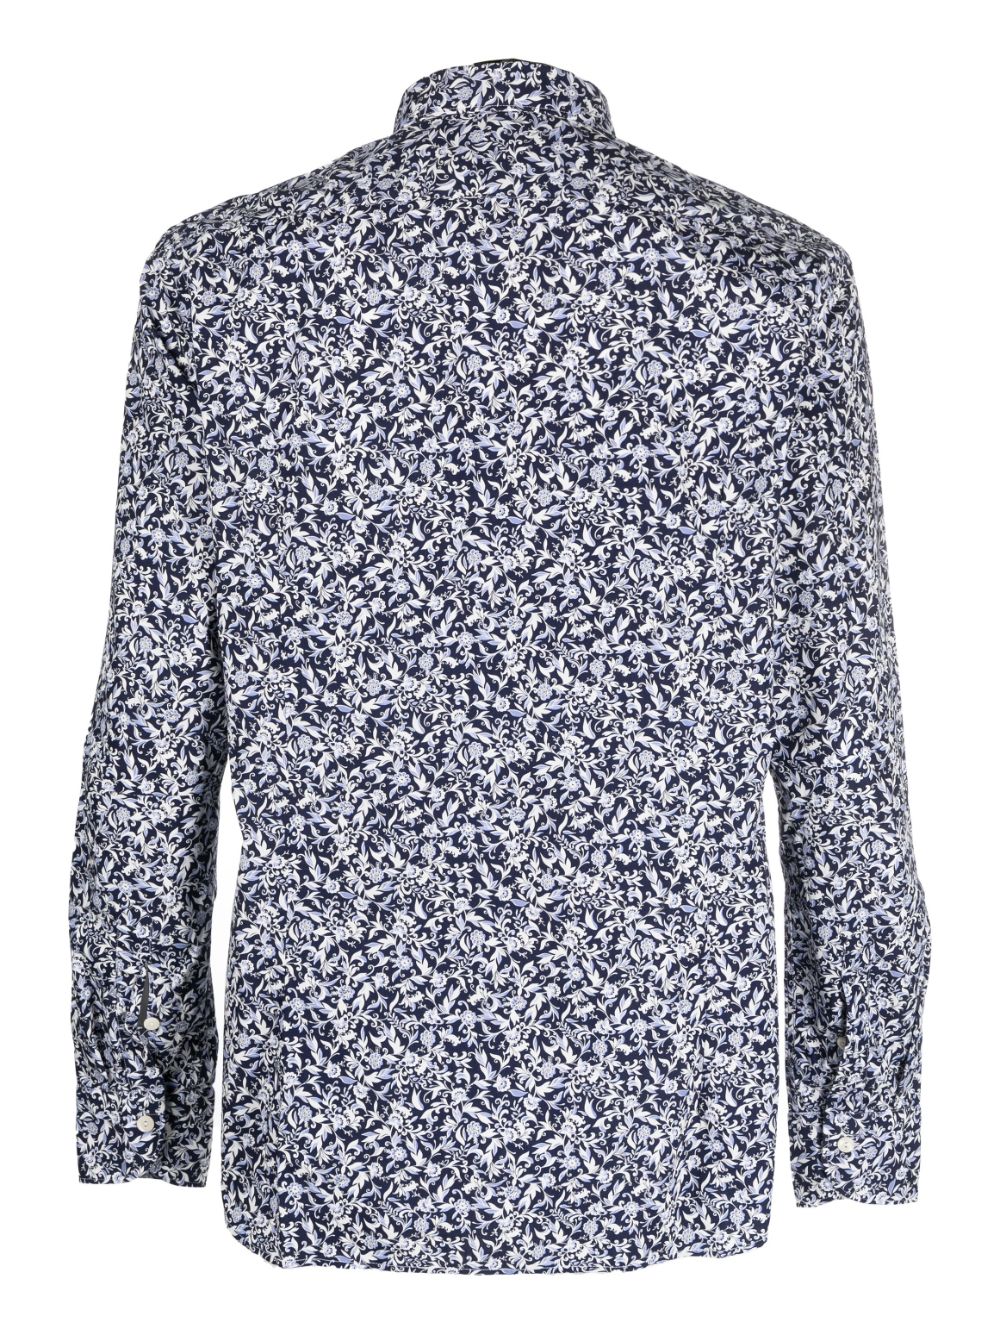 Tintoria Mattei floral-print long-sleeve shirt - Blauw